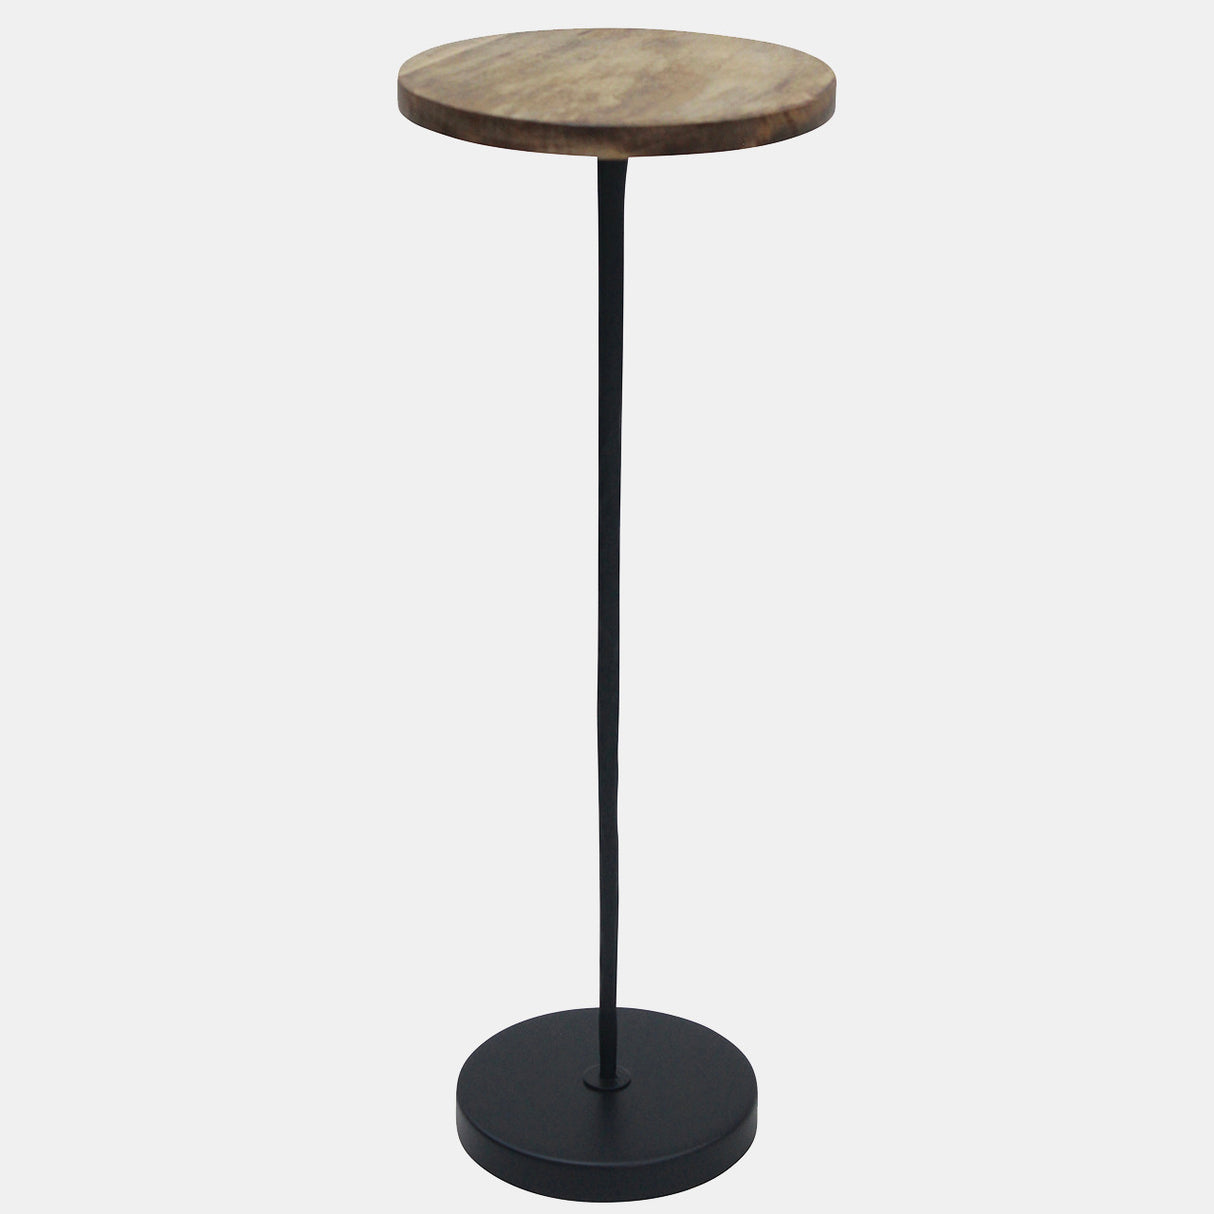 Metal/wood, 25"h Drink Table, Brown/black Kd - 17021-01